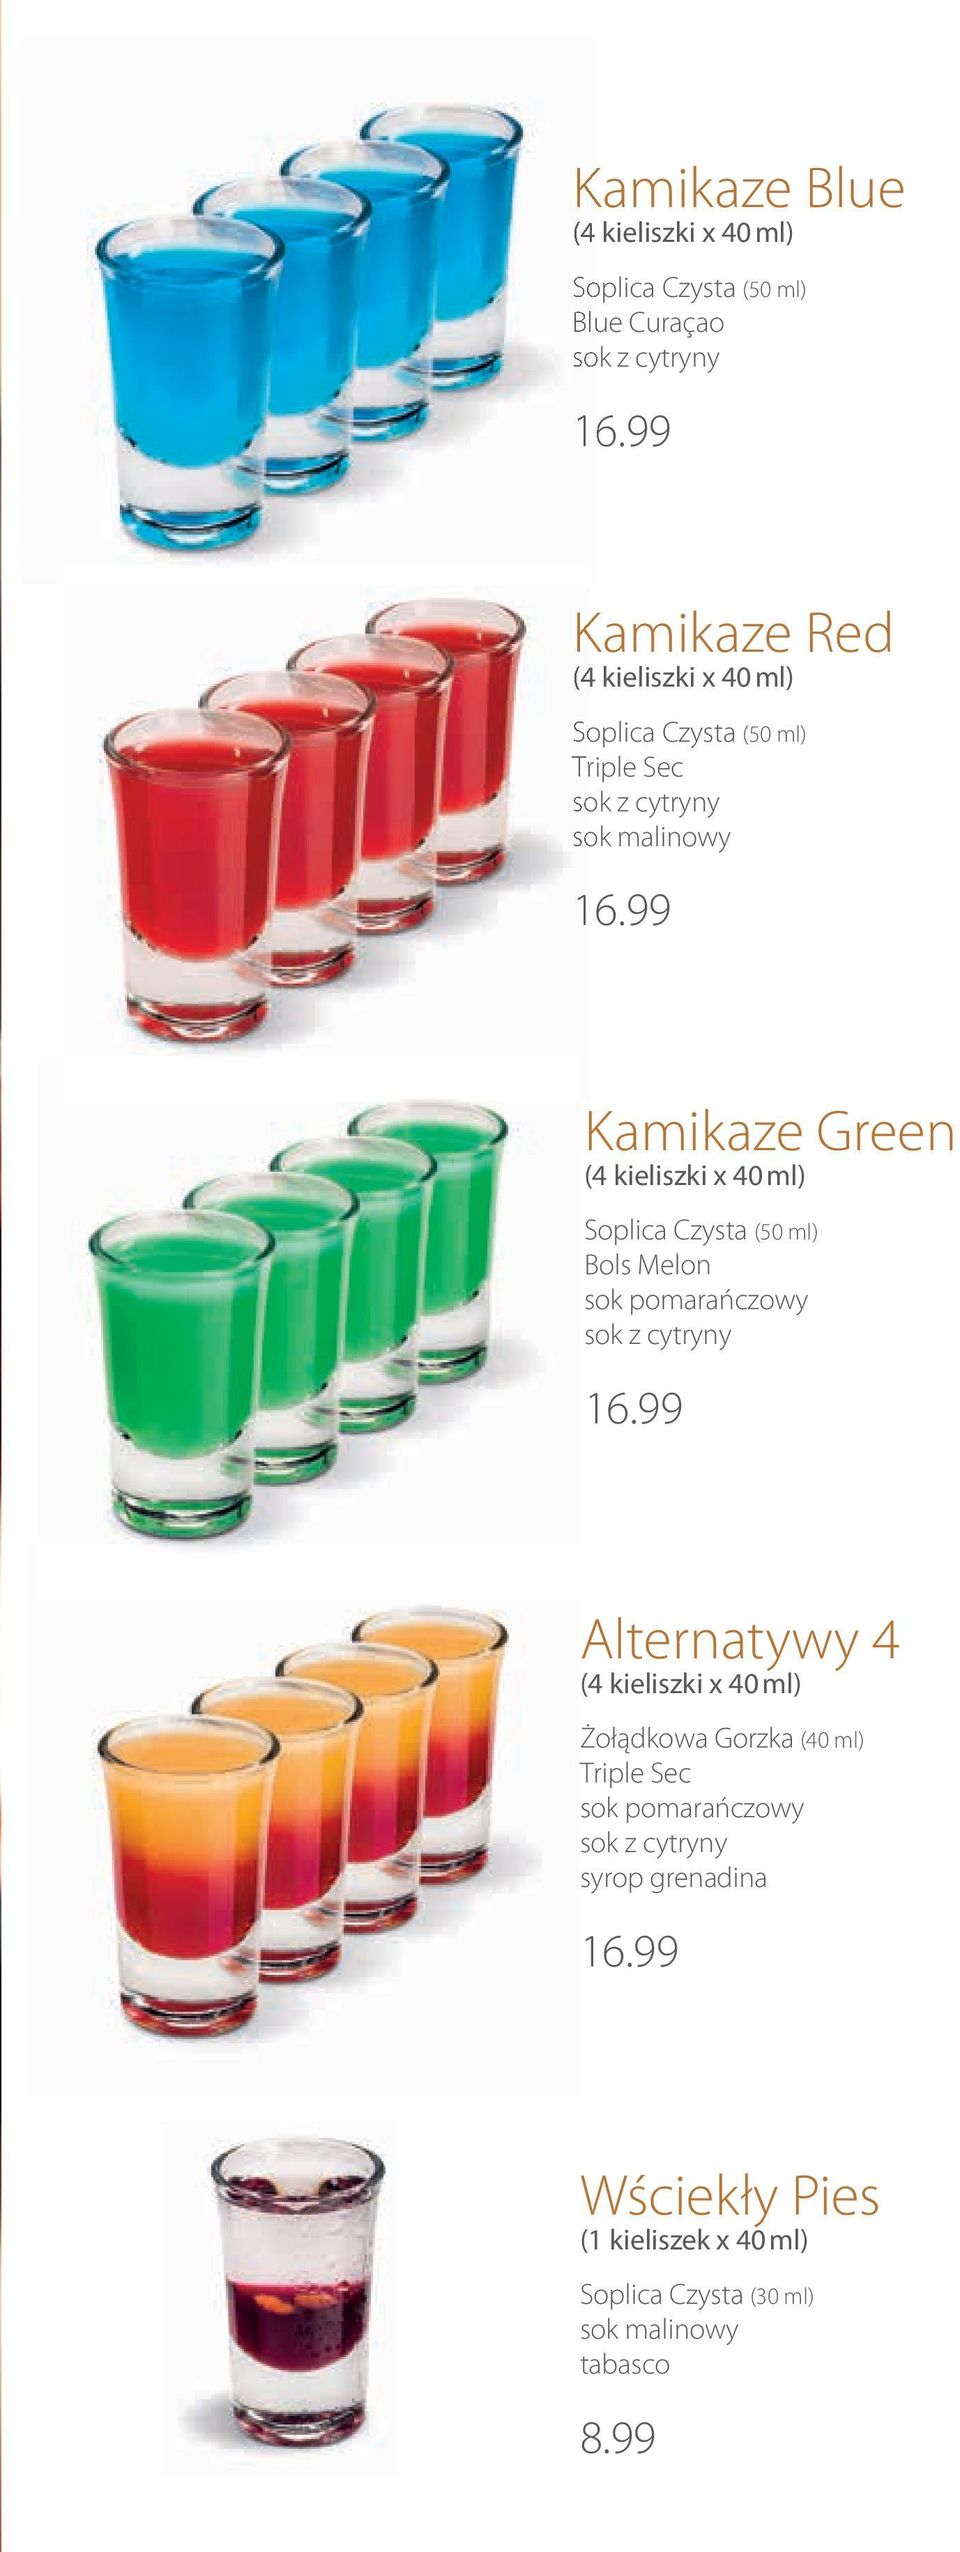 99 Kamikaze Green (4 kieliszki x ) Soplica Czysta (50 ml) Bols Melon sok pomarańczowy sok z cytryny 16.